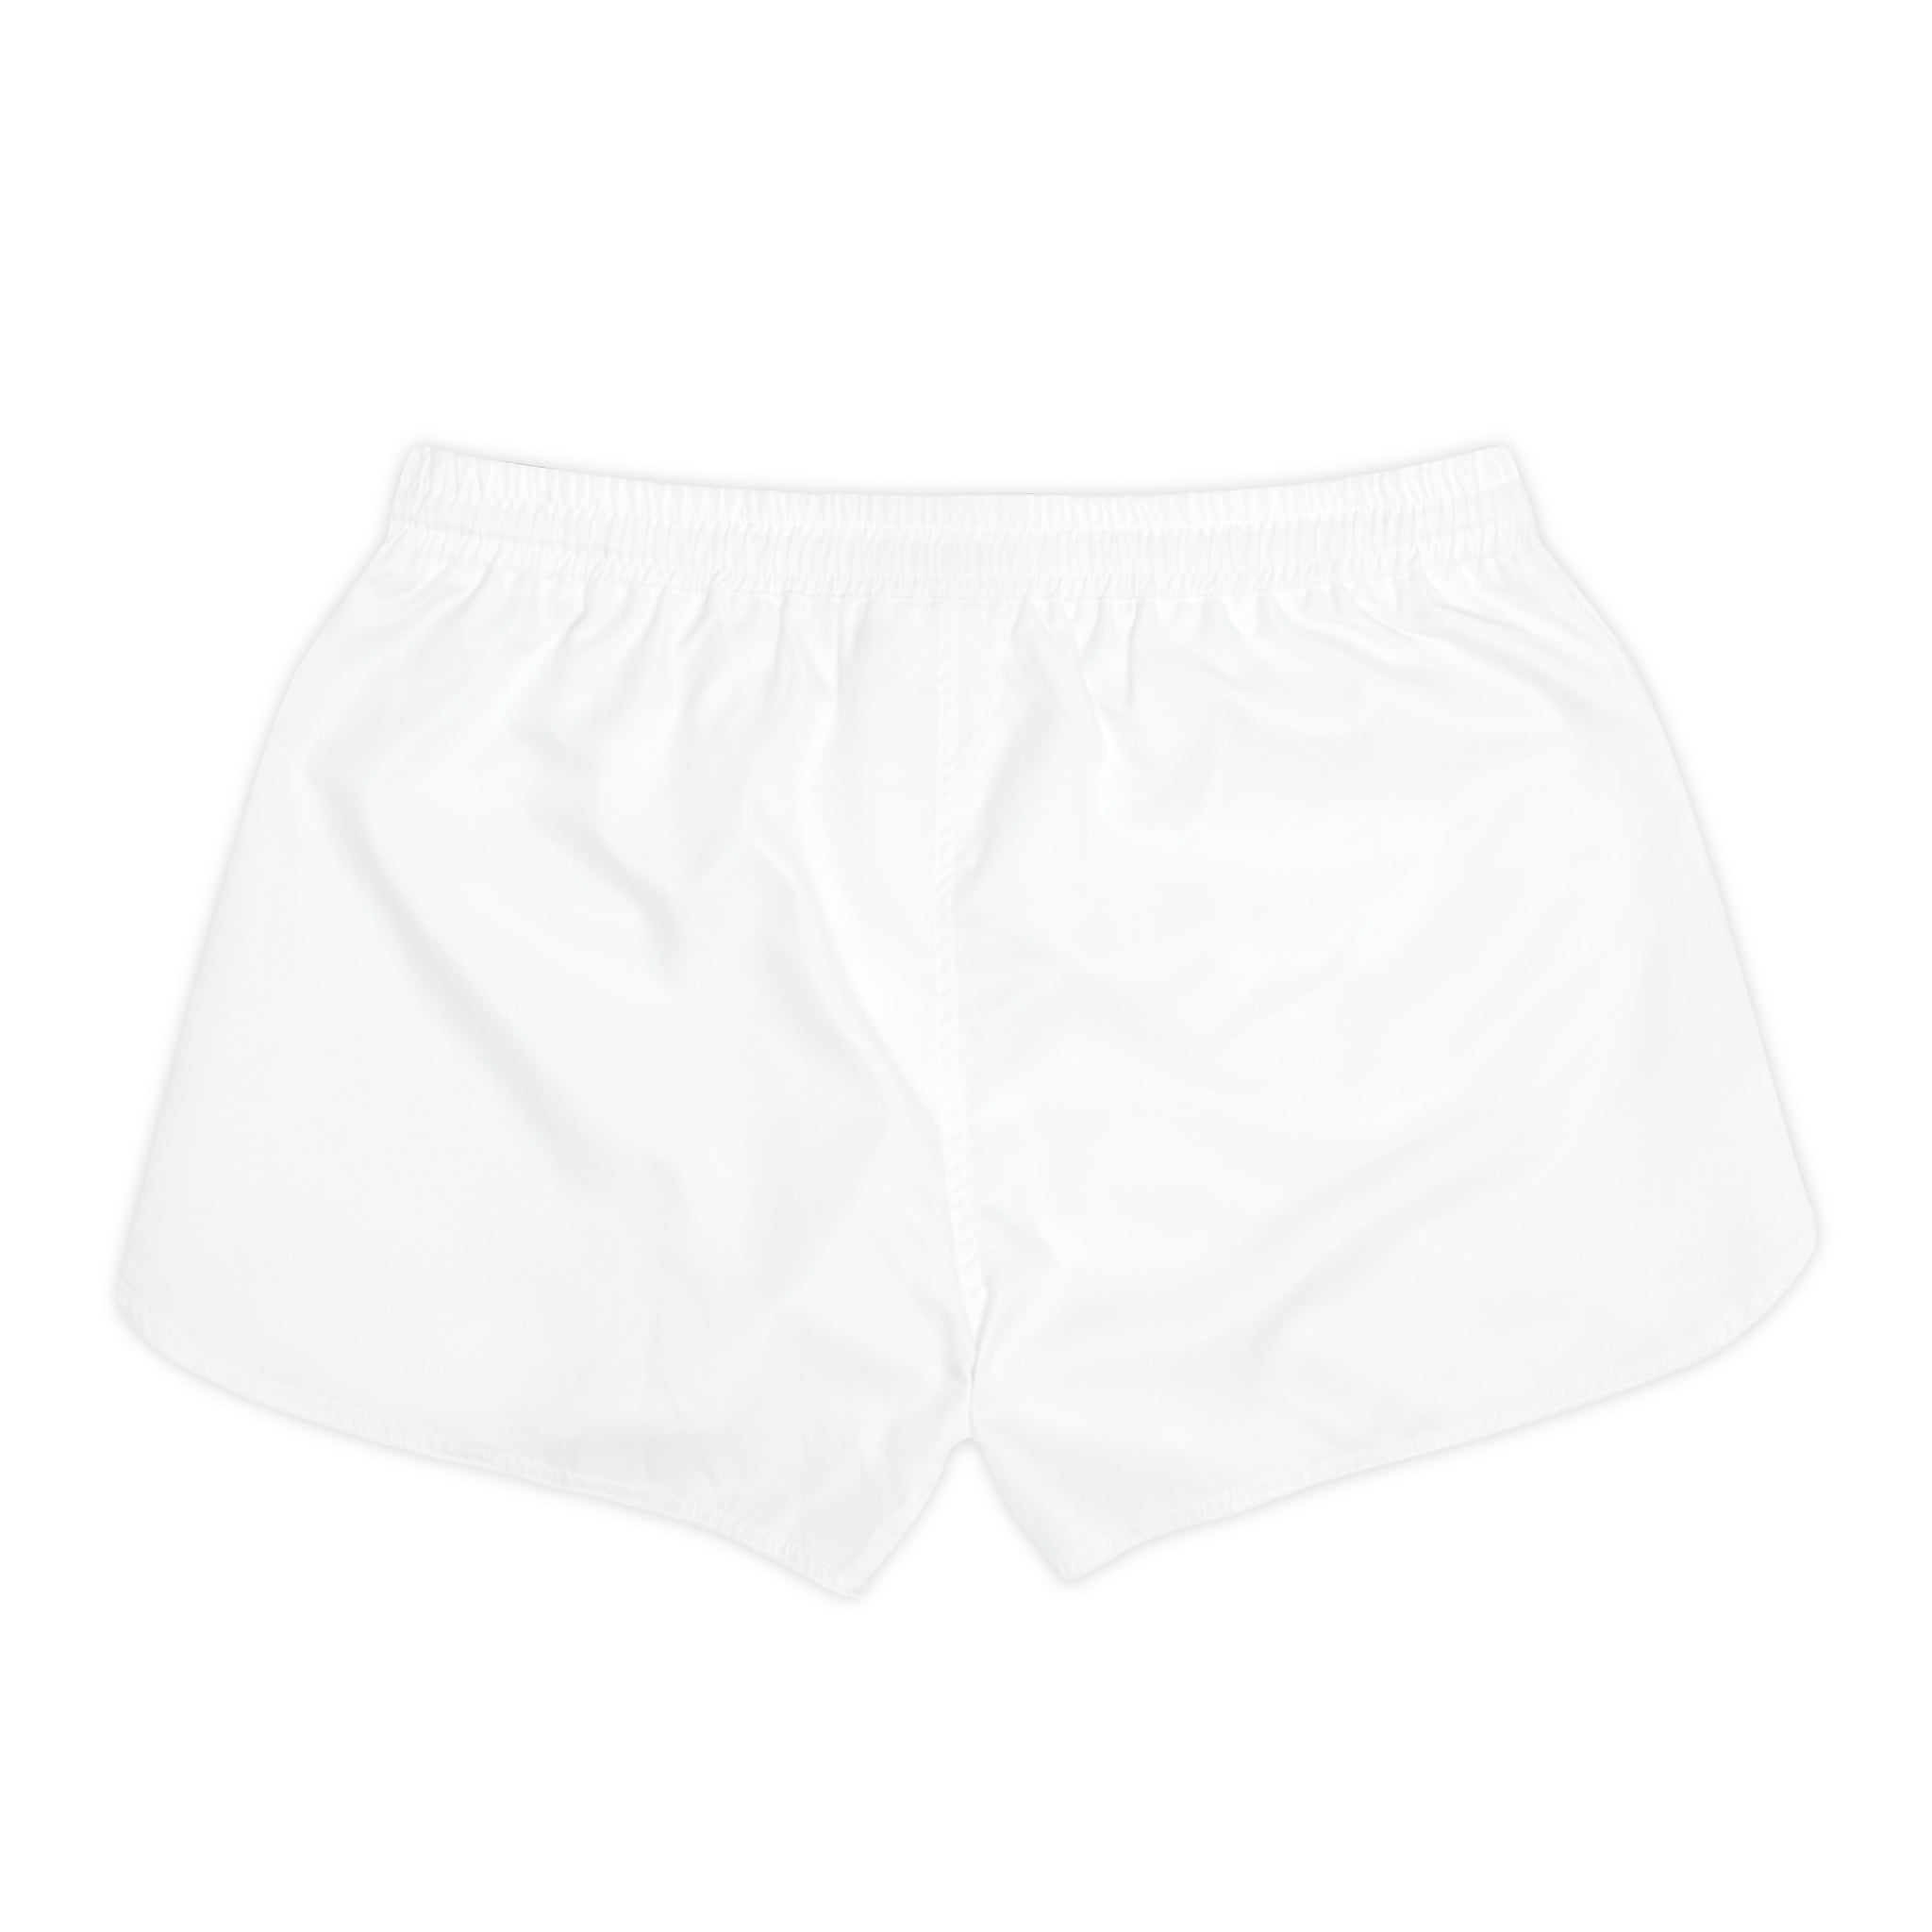 Women's Casual Shorts - White - Sunset Harbor Clothing